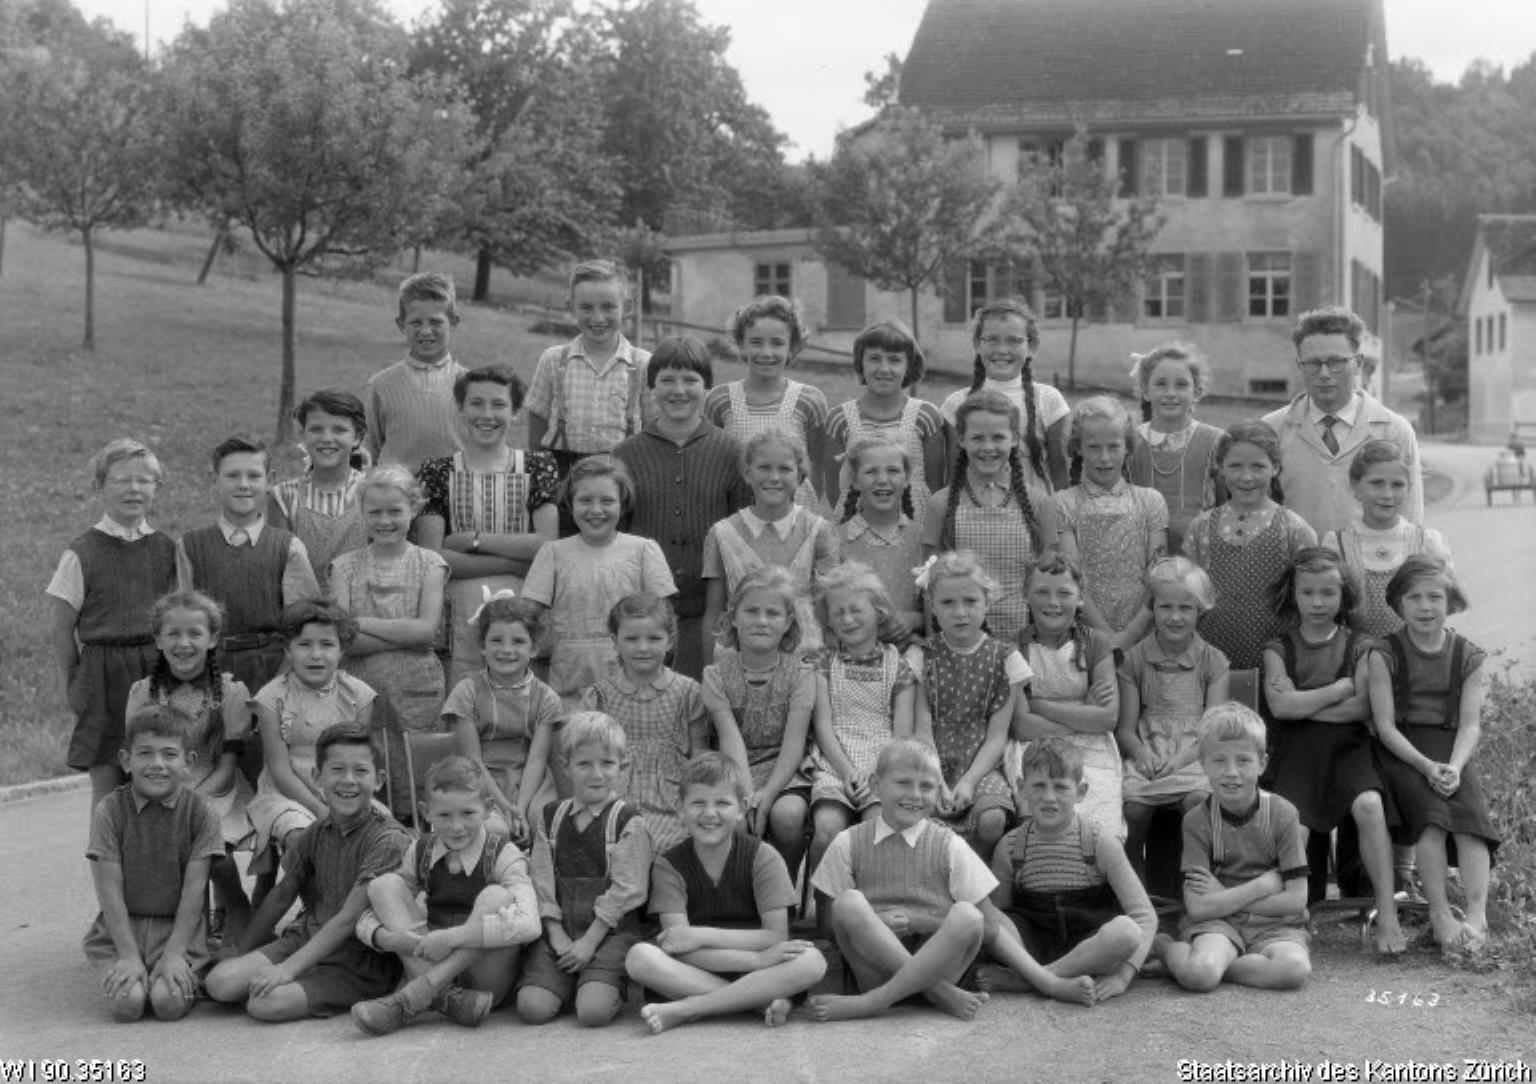 Primarschule Bettswil, Jürg Albrecht, 1956